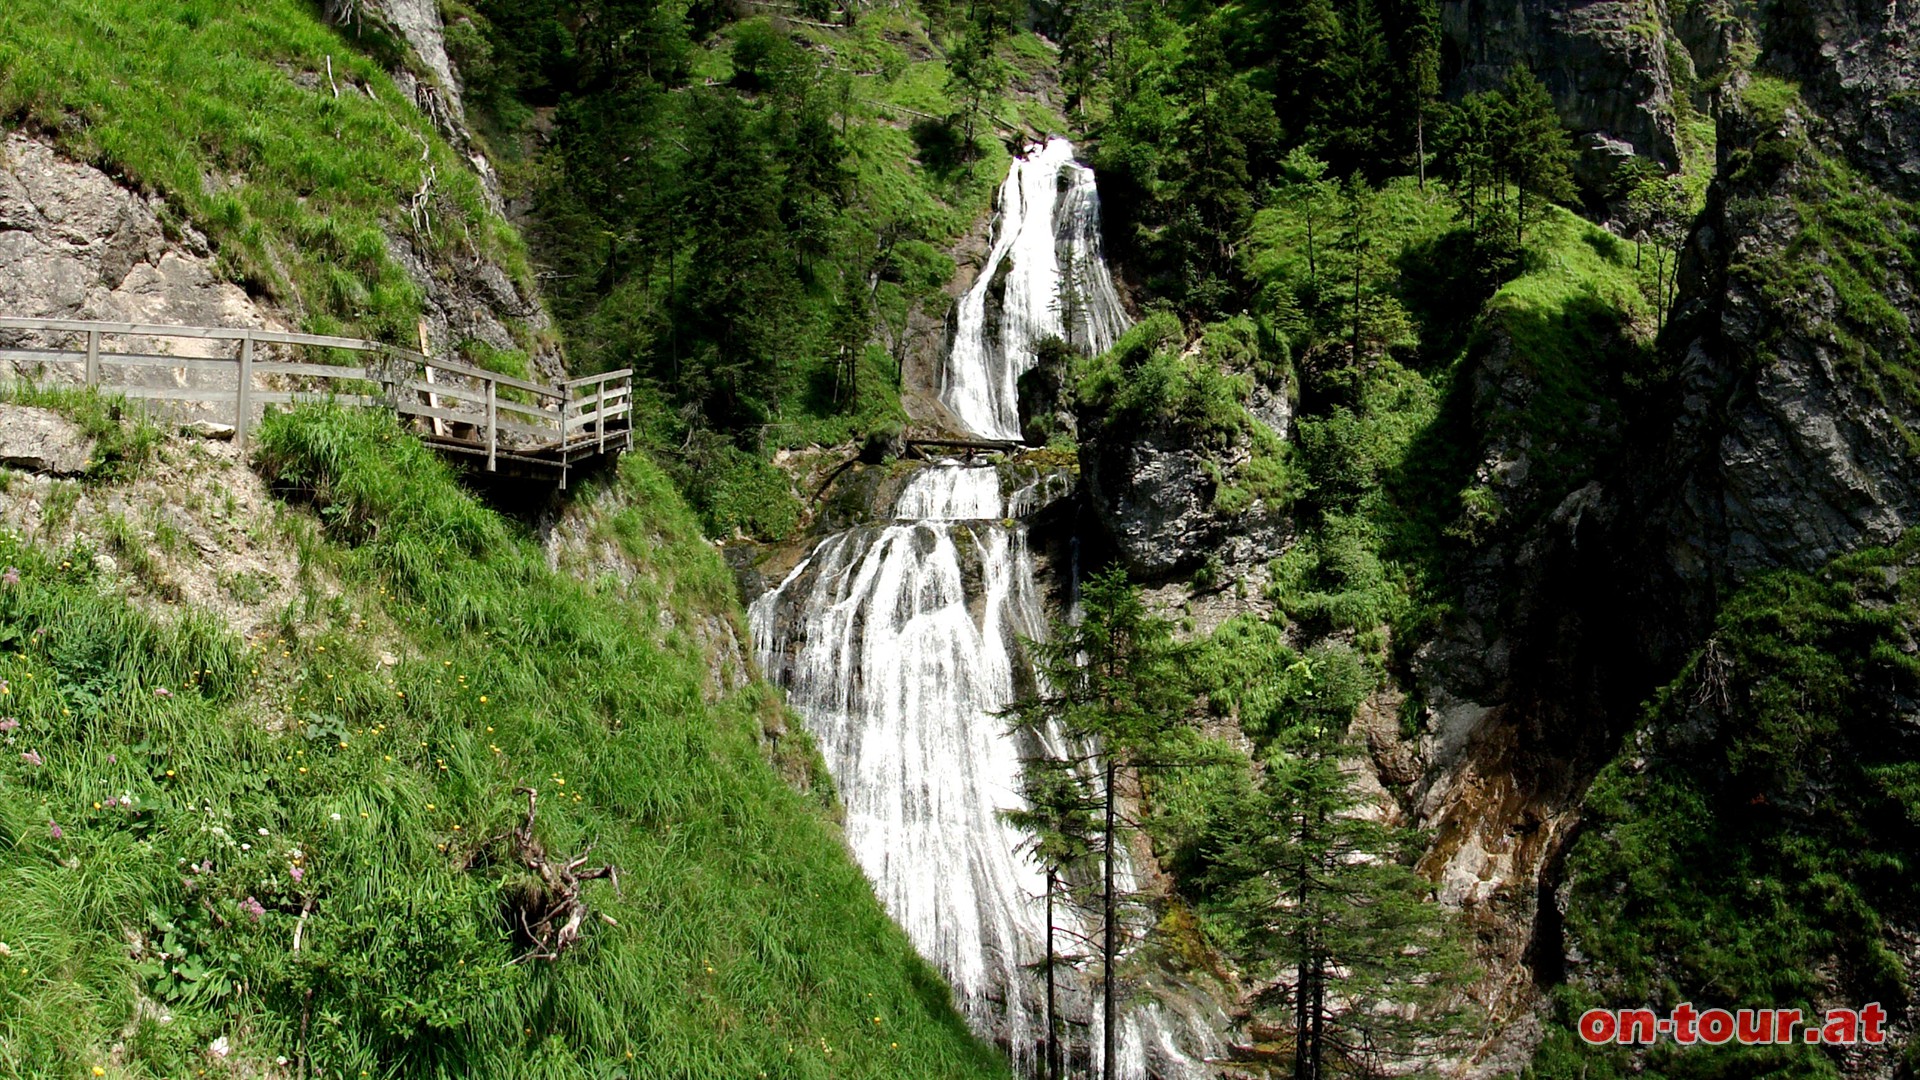 Den zweistufigen Wasserfall erlebt man ber mehrere spannende und intensive Perspektiven am Steig.